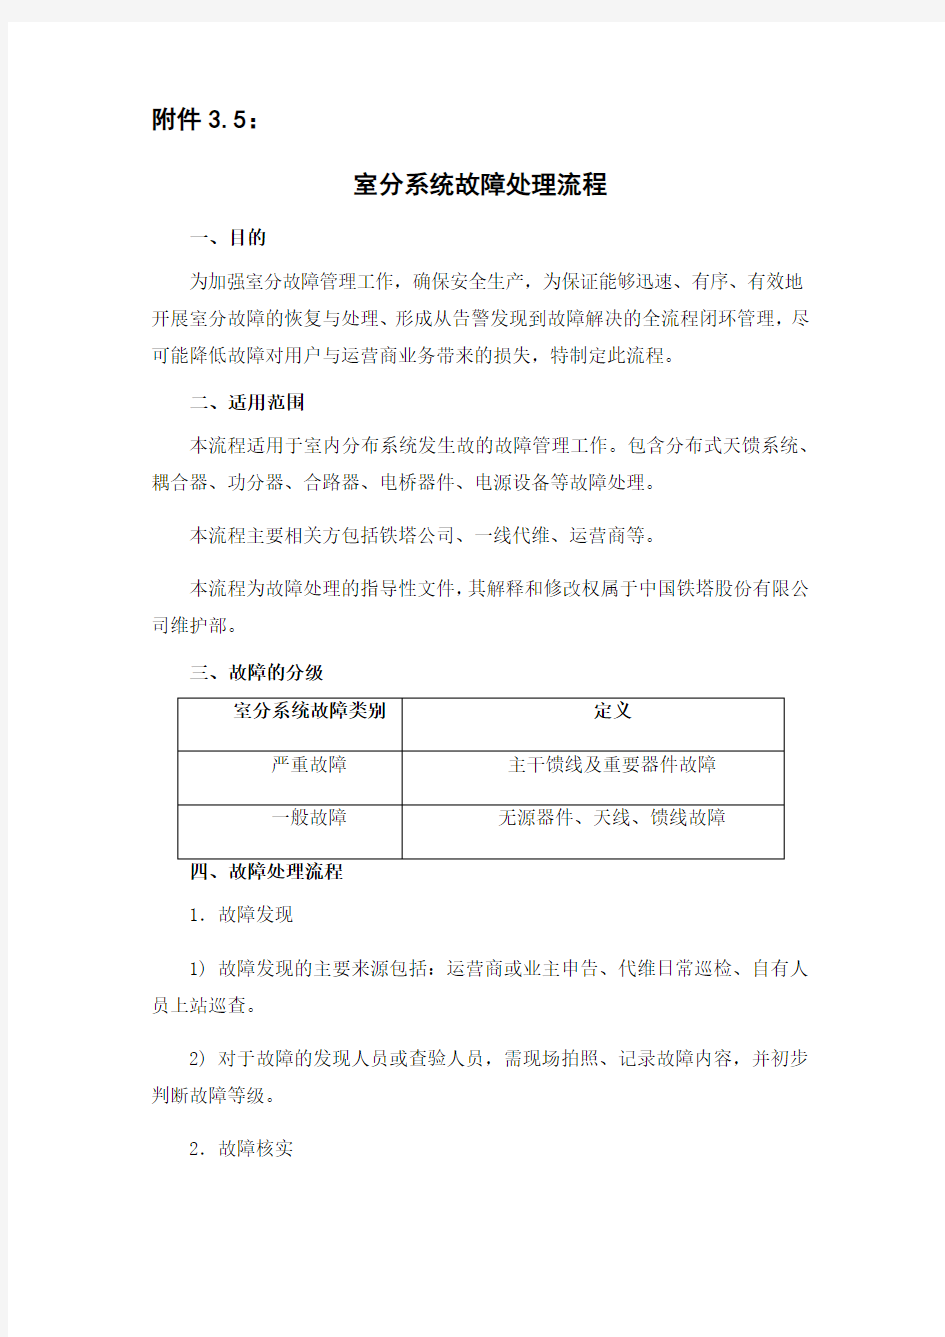 中国铁塔室分系统故障处理流程演示教学